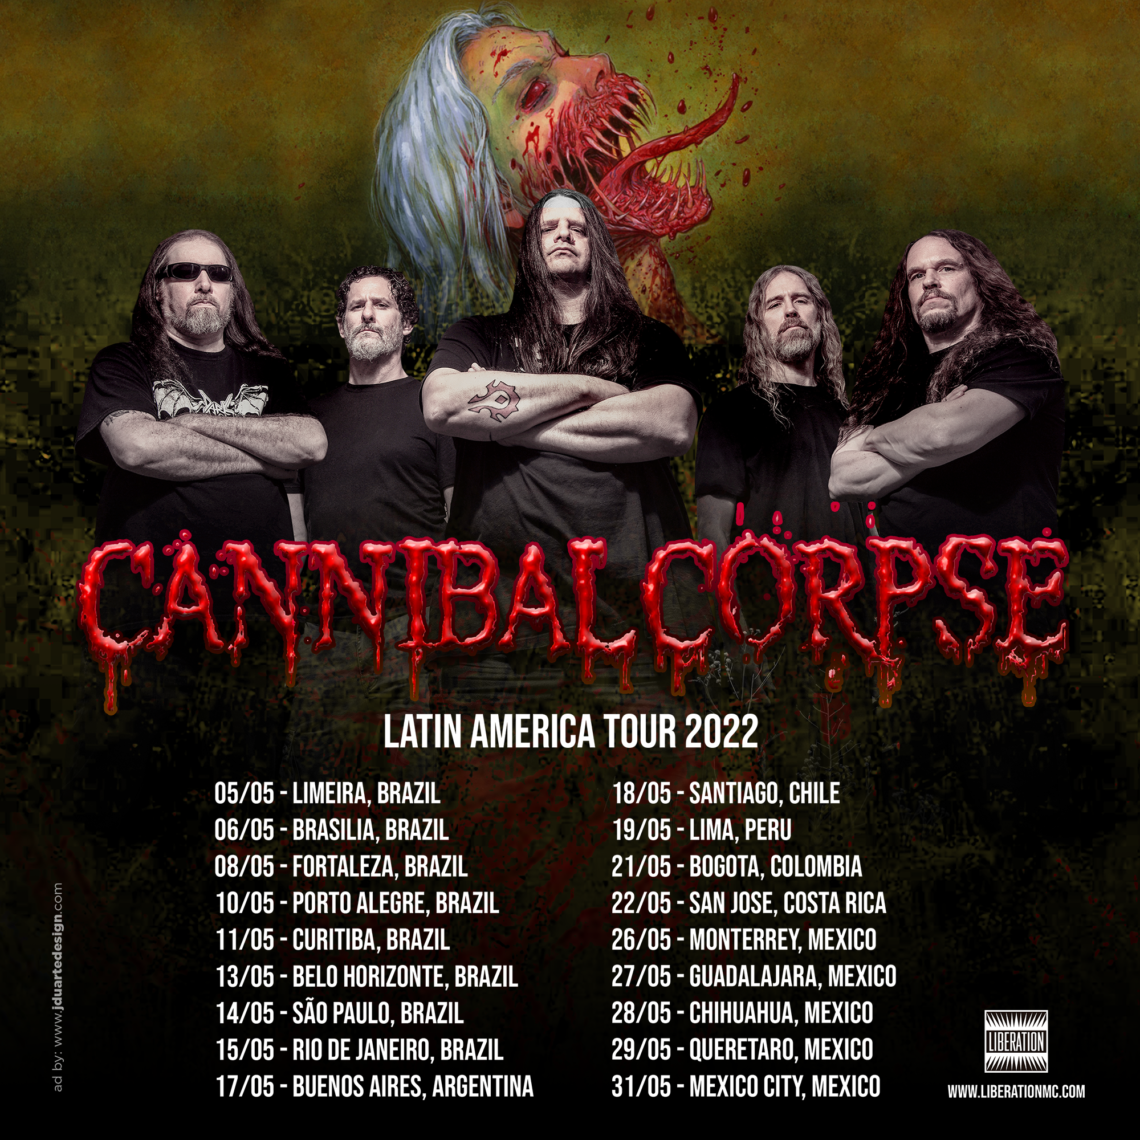 Cannibal Corpse regresa a México con su más reciente álbum Violence